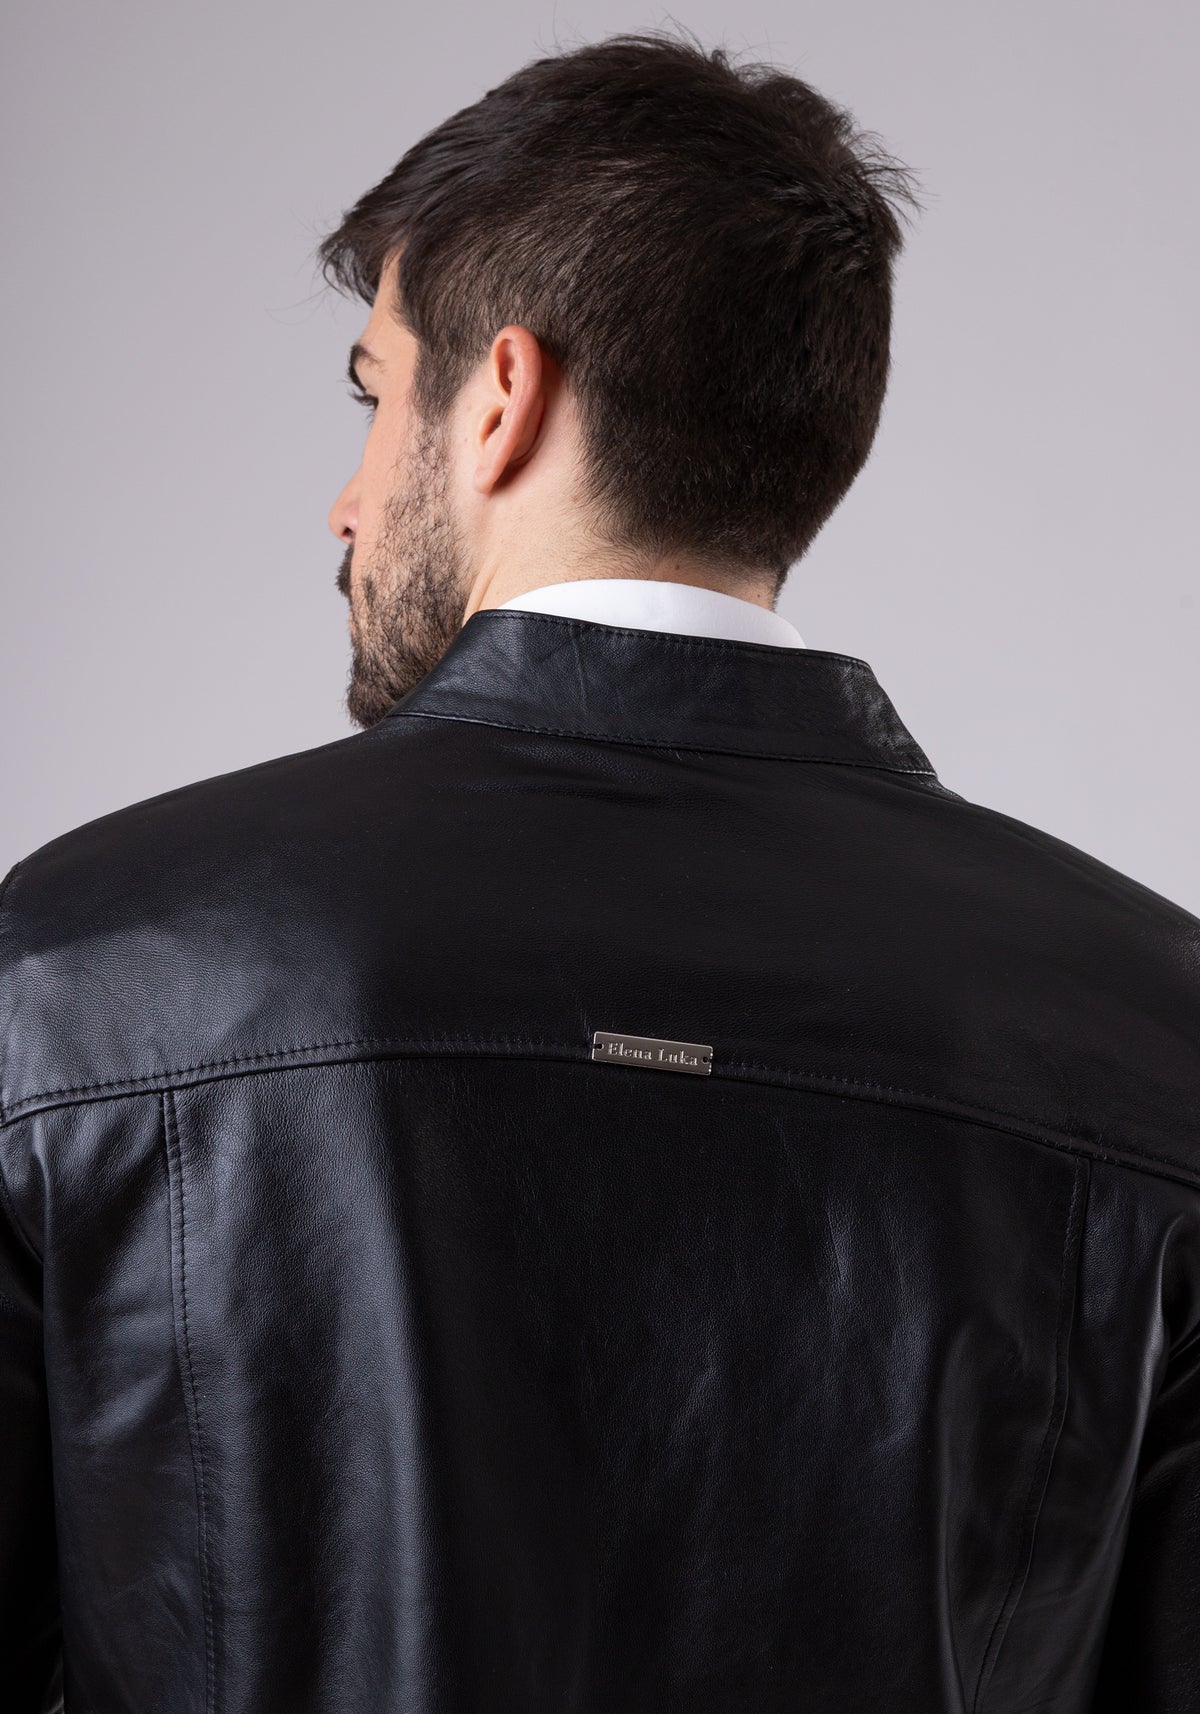 Leather Jacket black